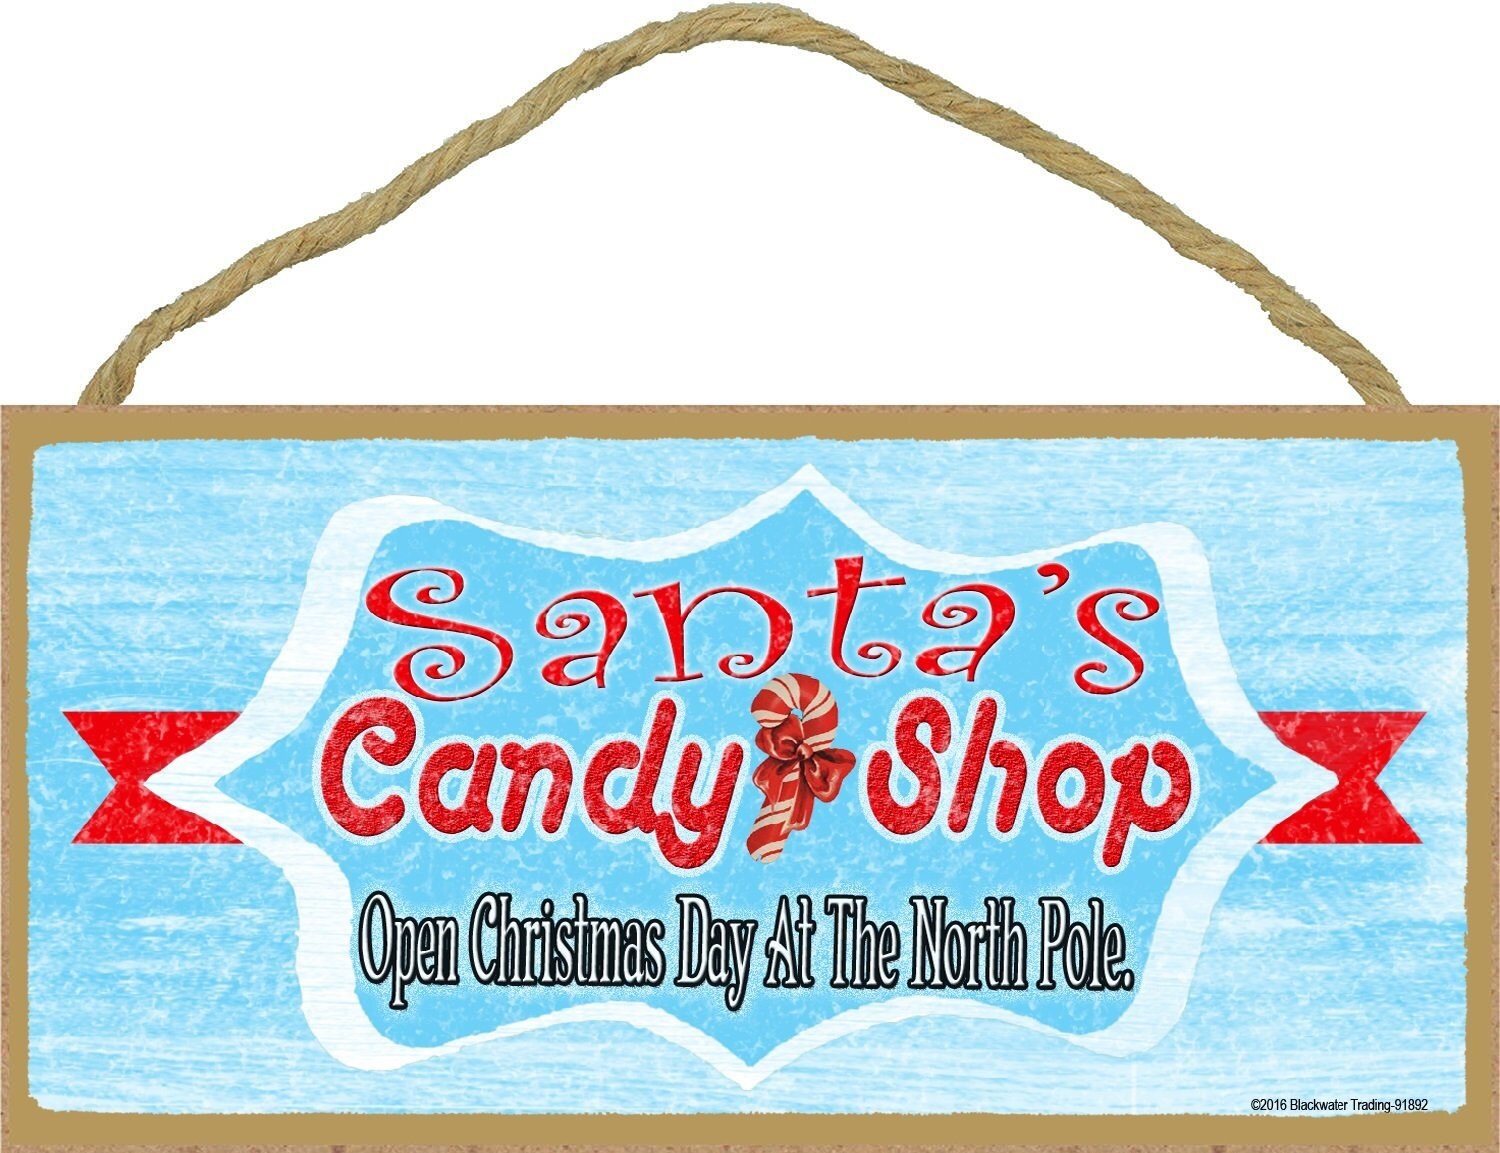 Candy rust shop фото 80